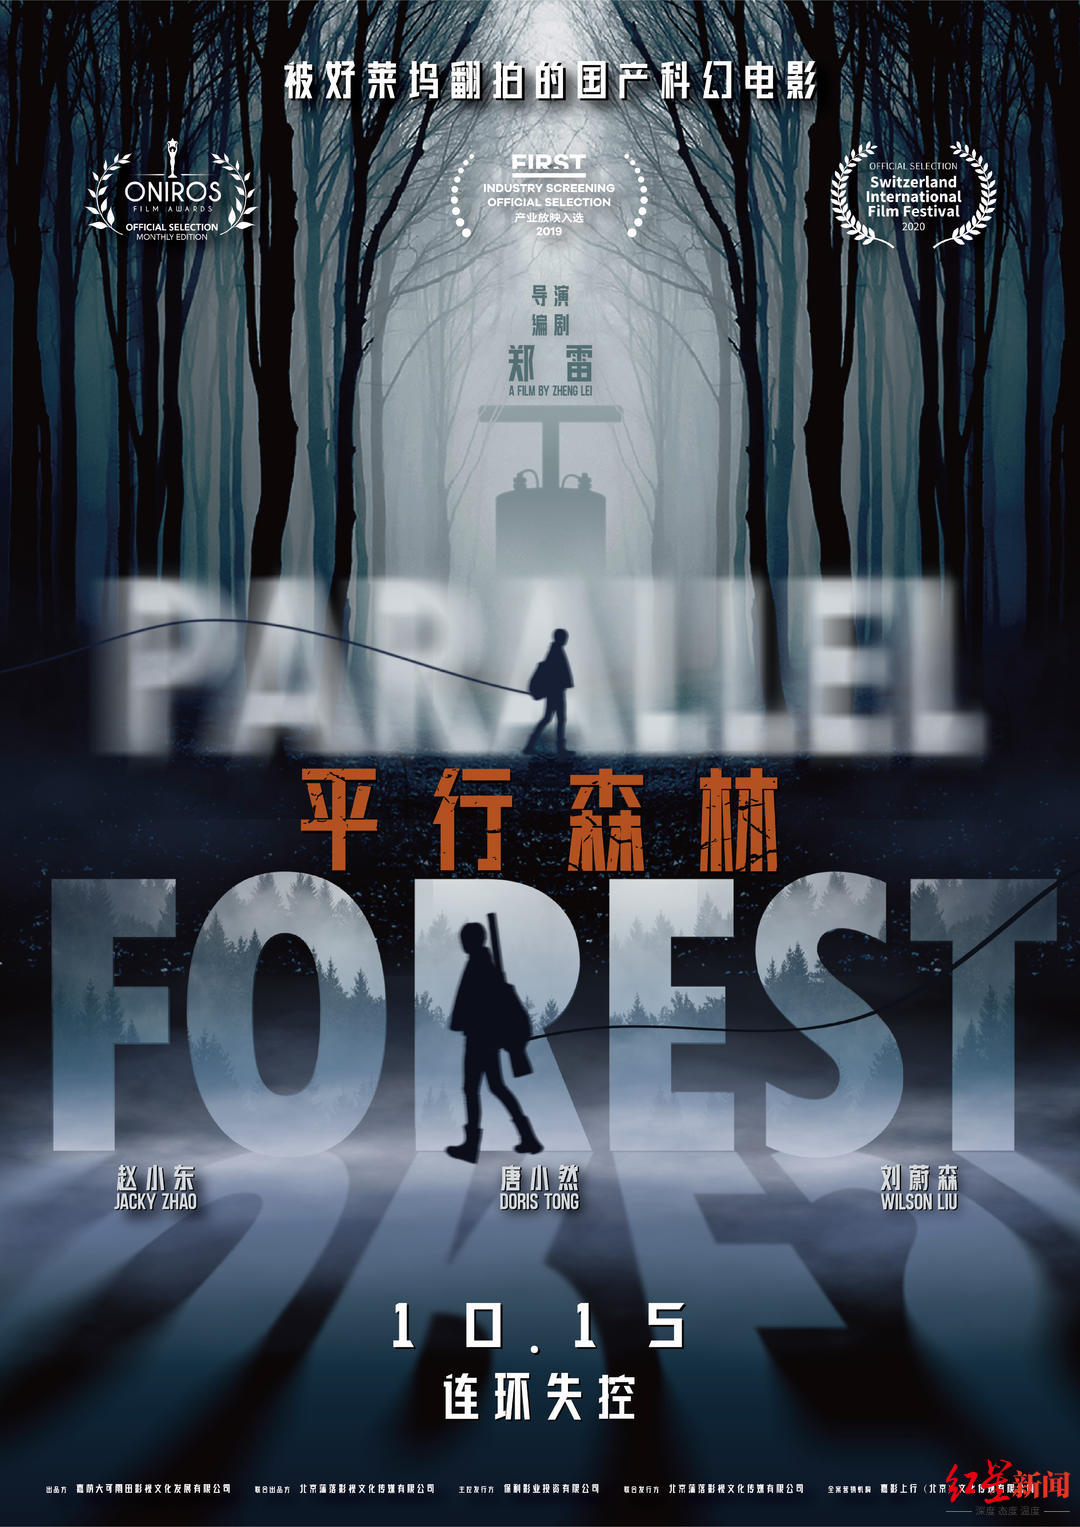 国产科幻电影《平行森林》成都点映 已被好莱坞买下翻拍版权